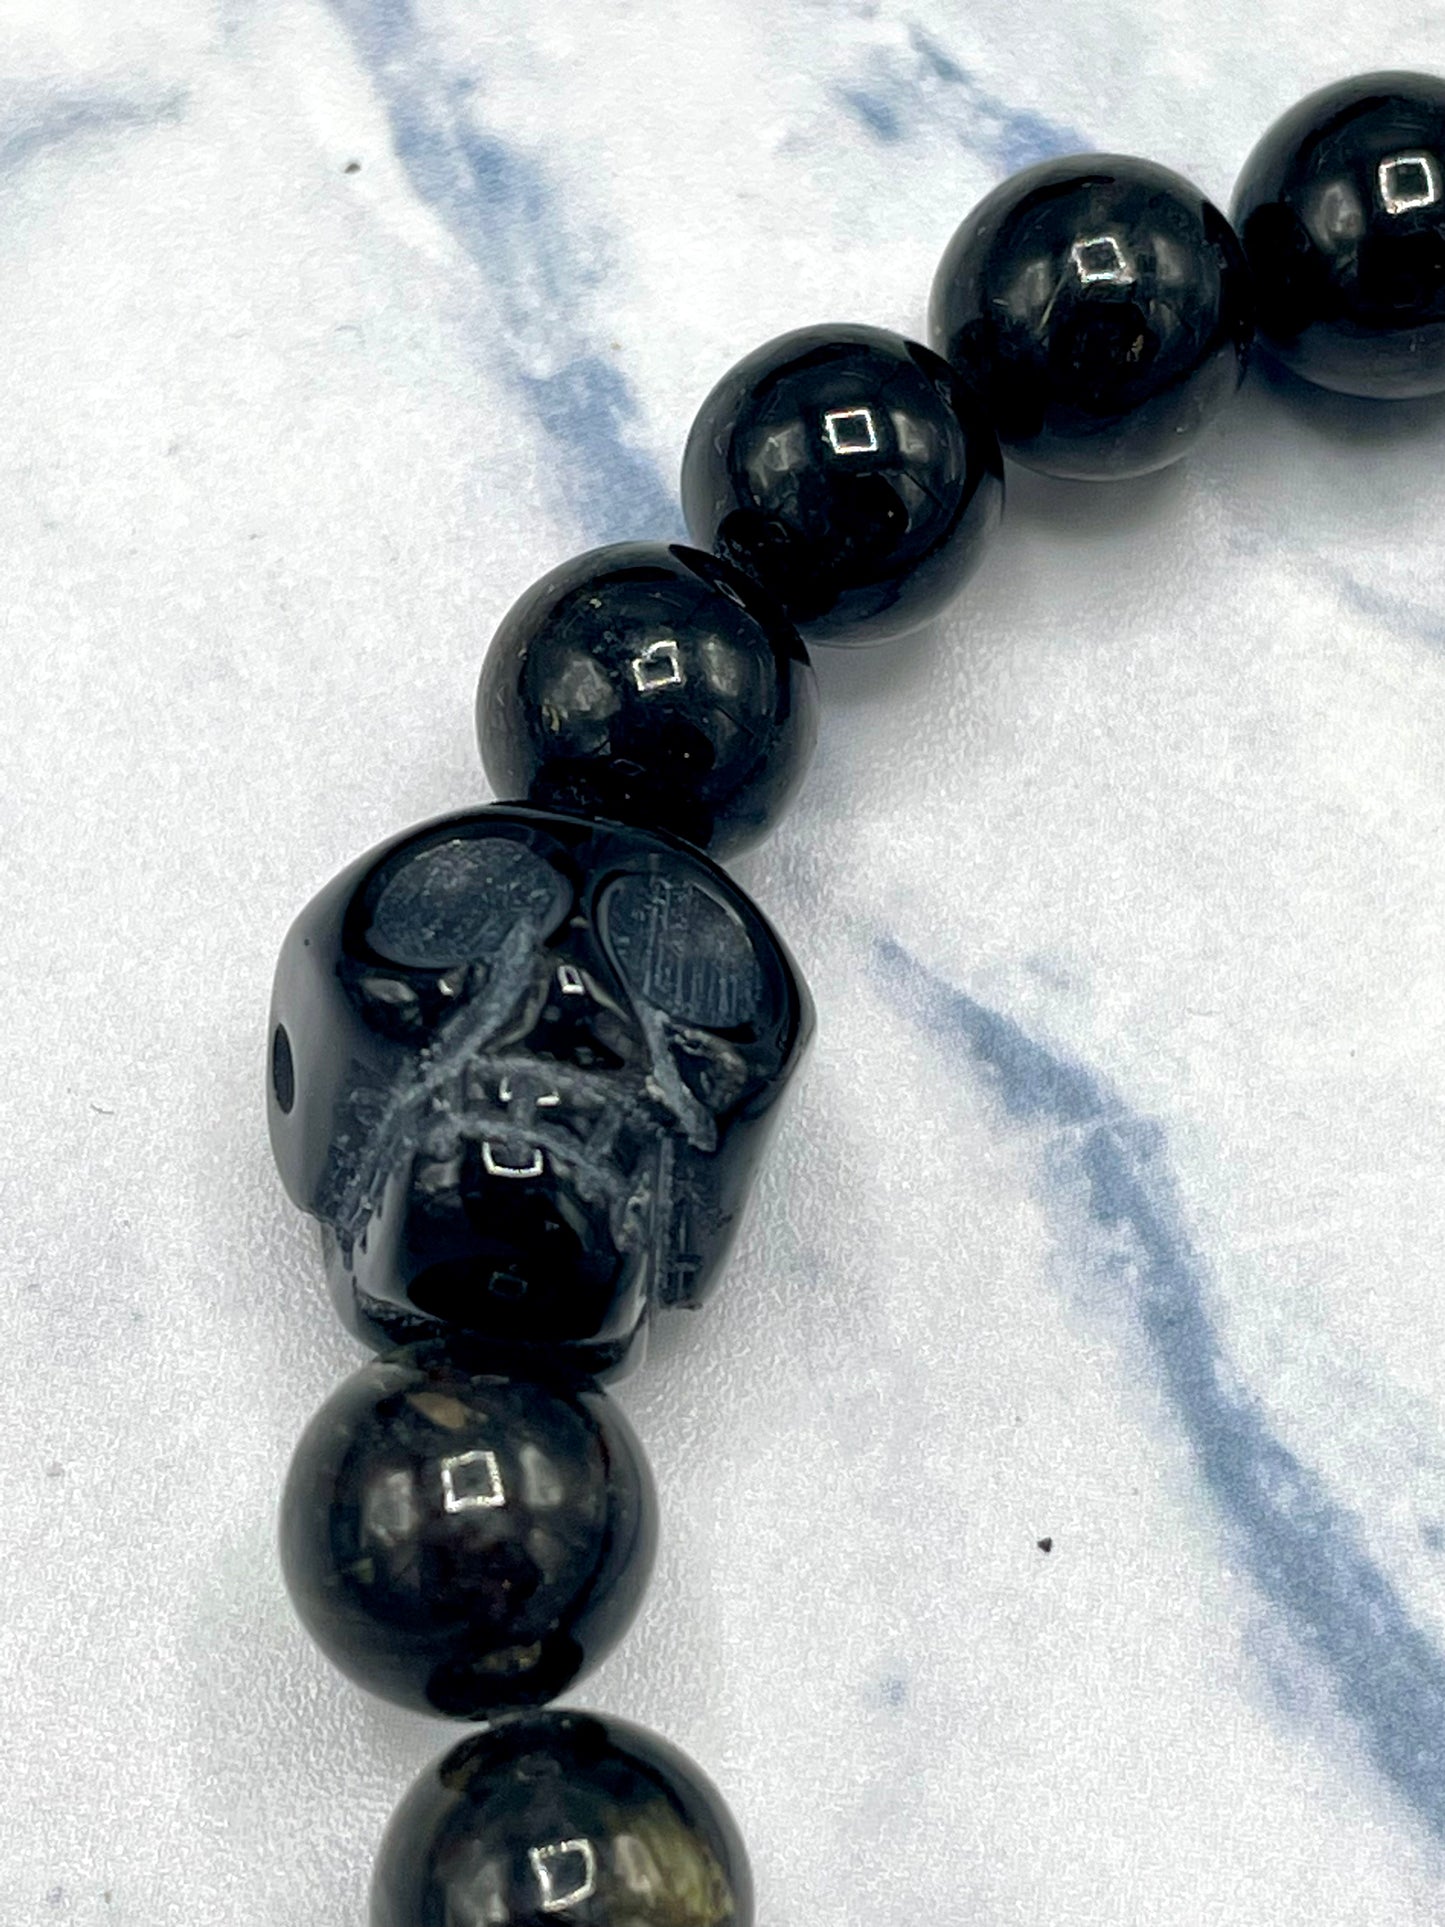 Black Labradorite and Onyx gemstone Skull Bracelet